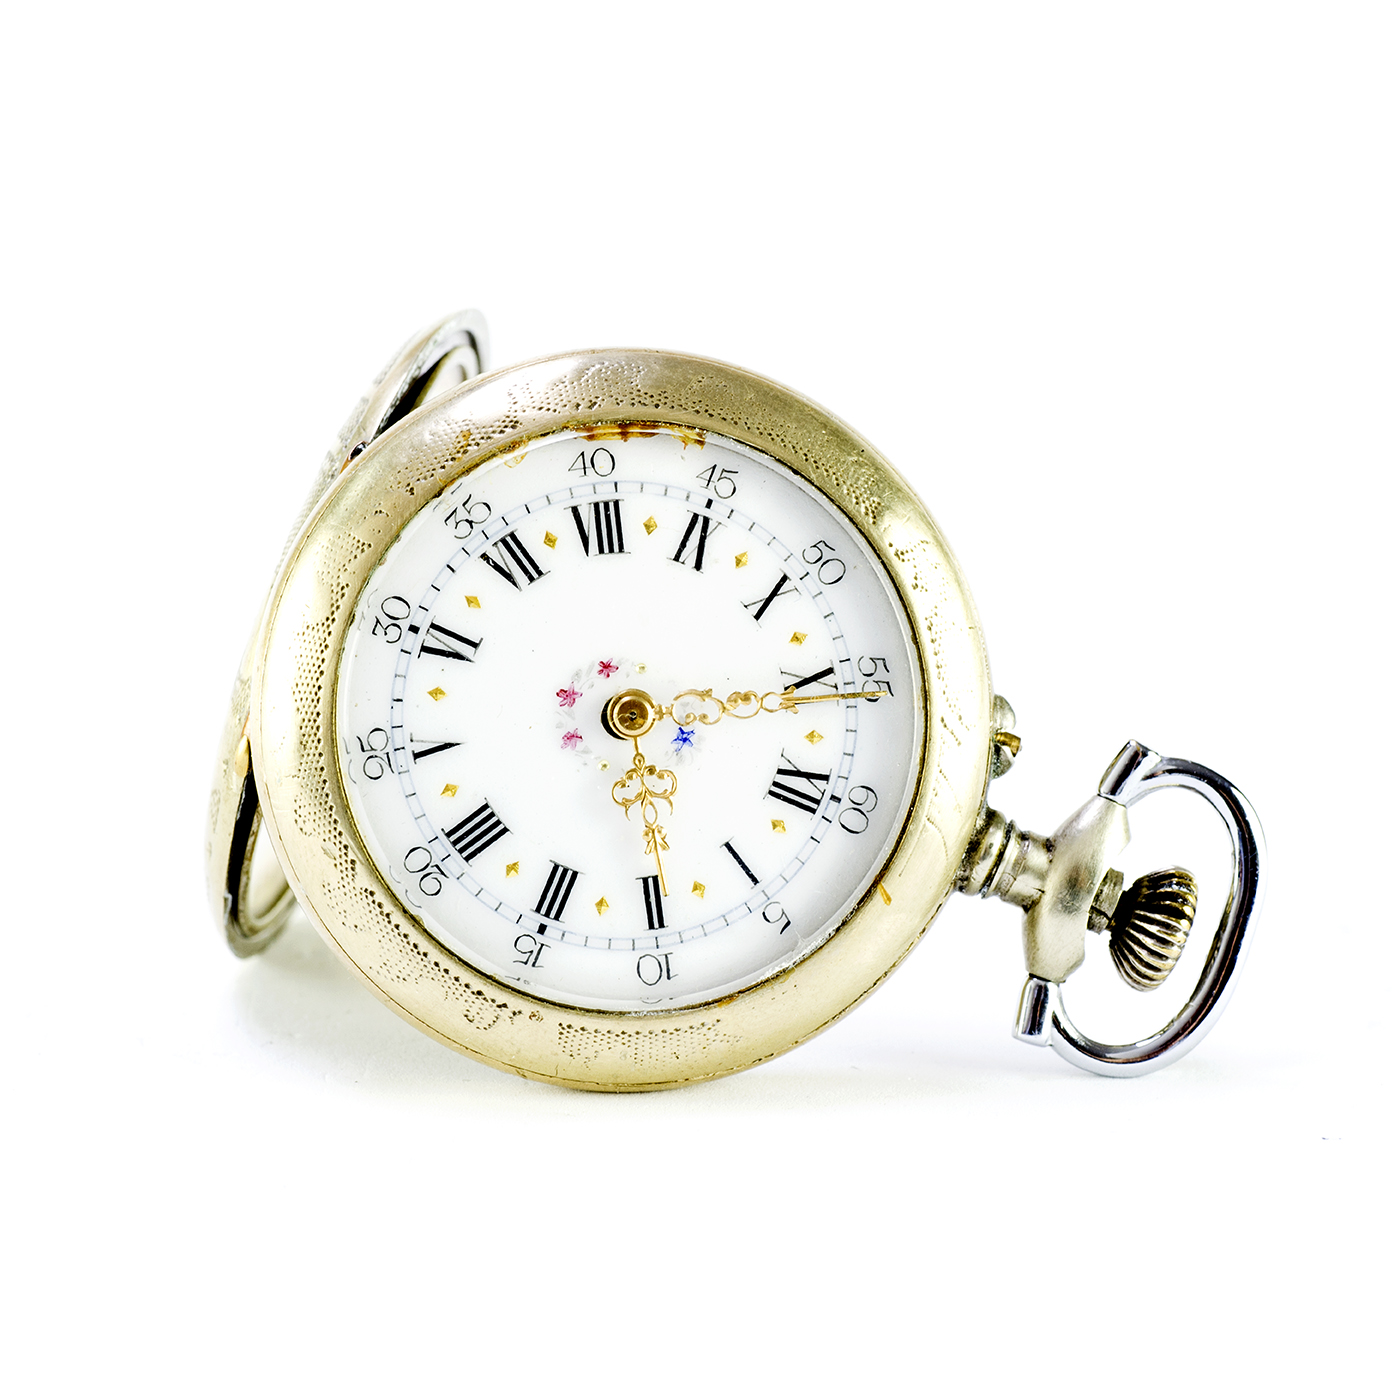 Reloj suizo para colgar, lepine y remontoir. Ca. 1900